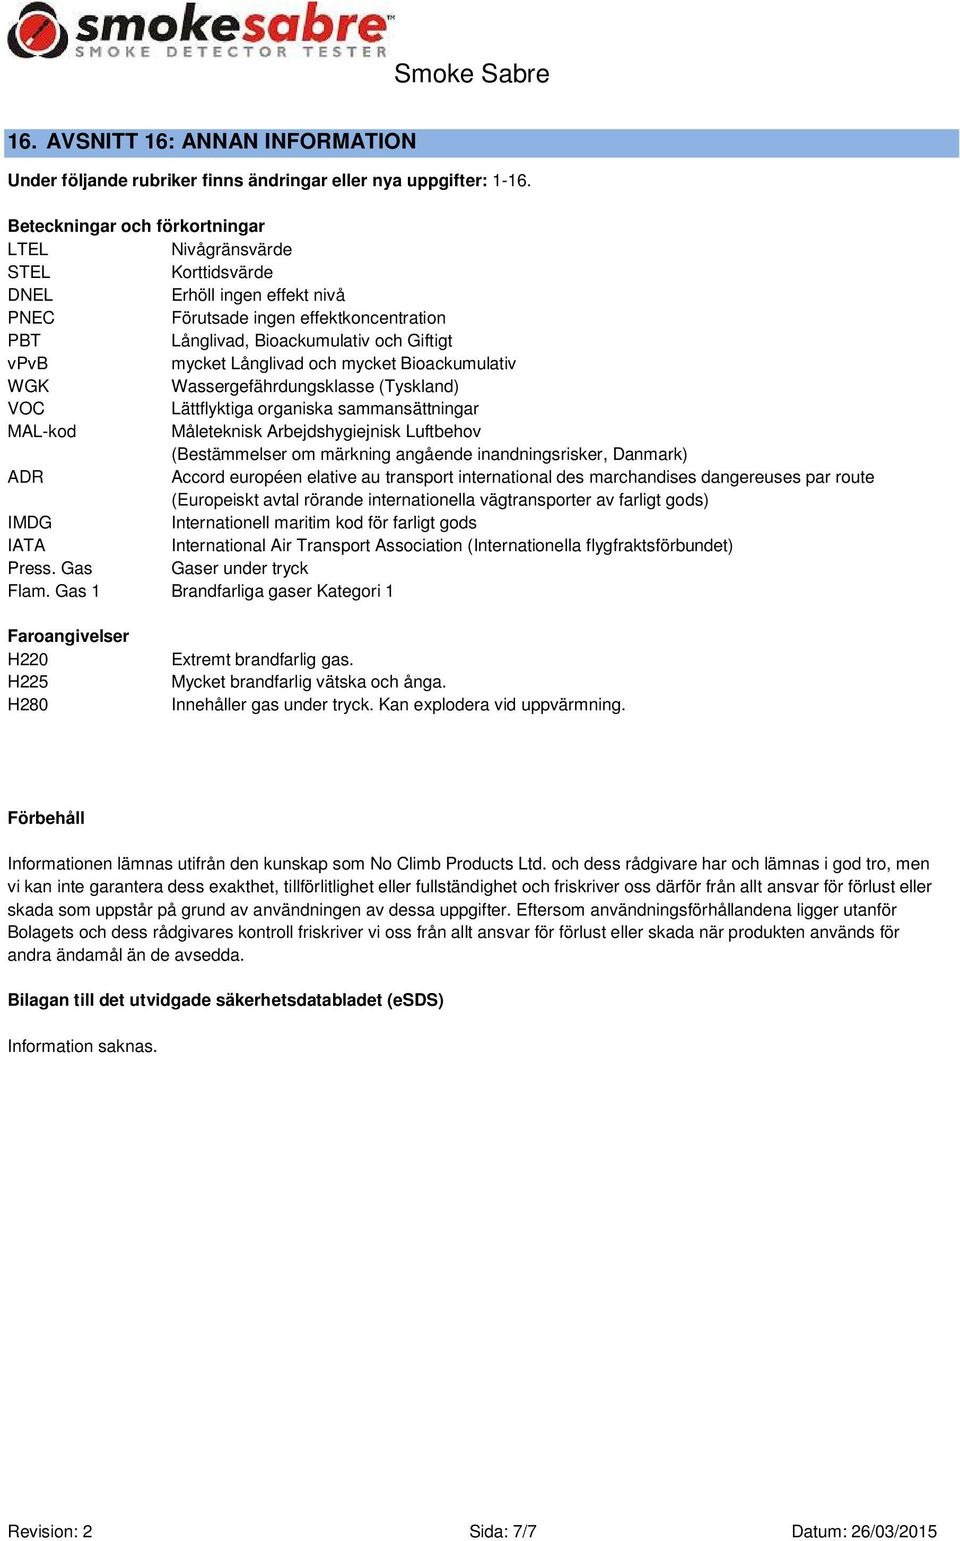 Långlivad och mycket Bioackumulativ WGK Wassergefährdungsklasse (Tyskland) VOC Lättflyktiga organiska sammansättningar MAL-kod Måleteknisk Arbejdshygiejnisk Luftbehov (Bestämmelser om märkning